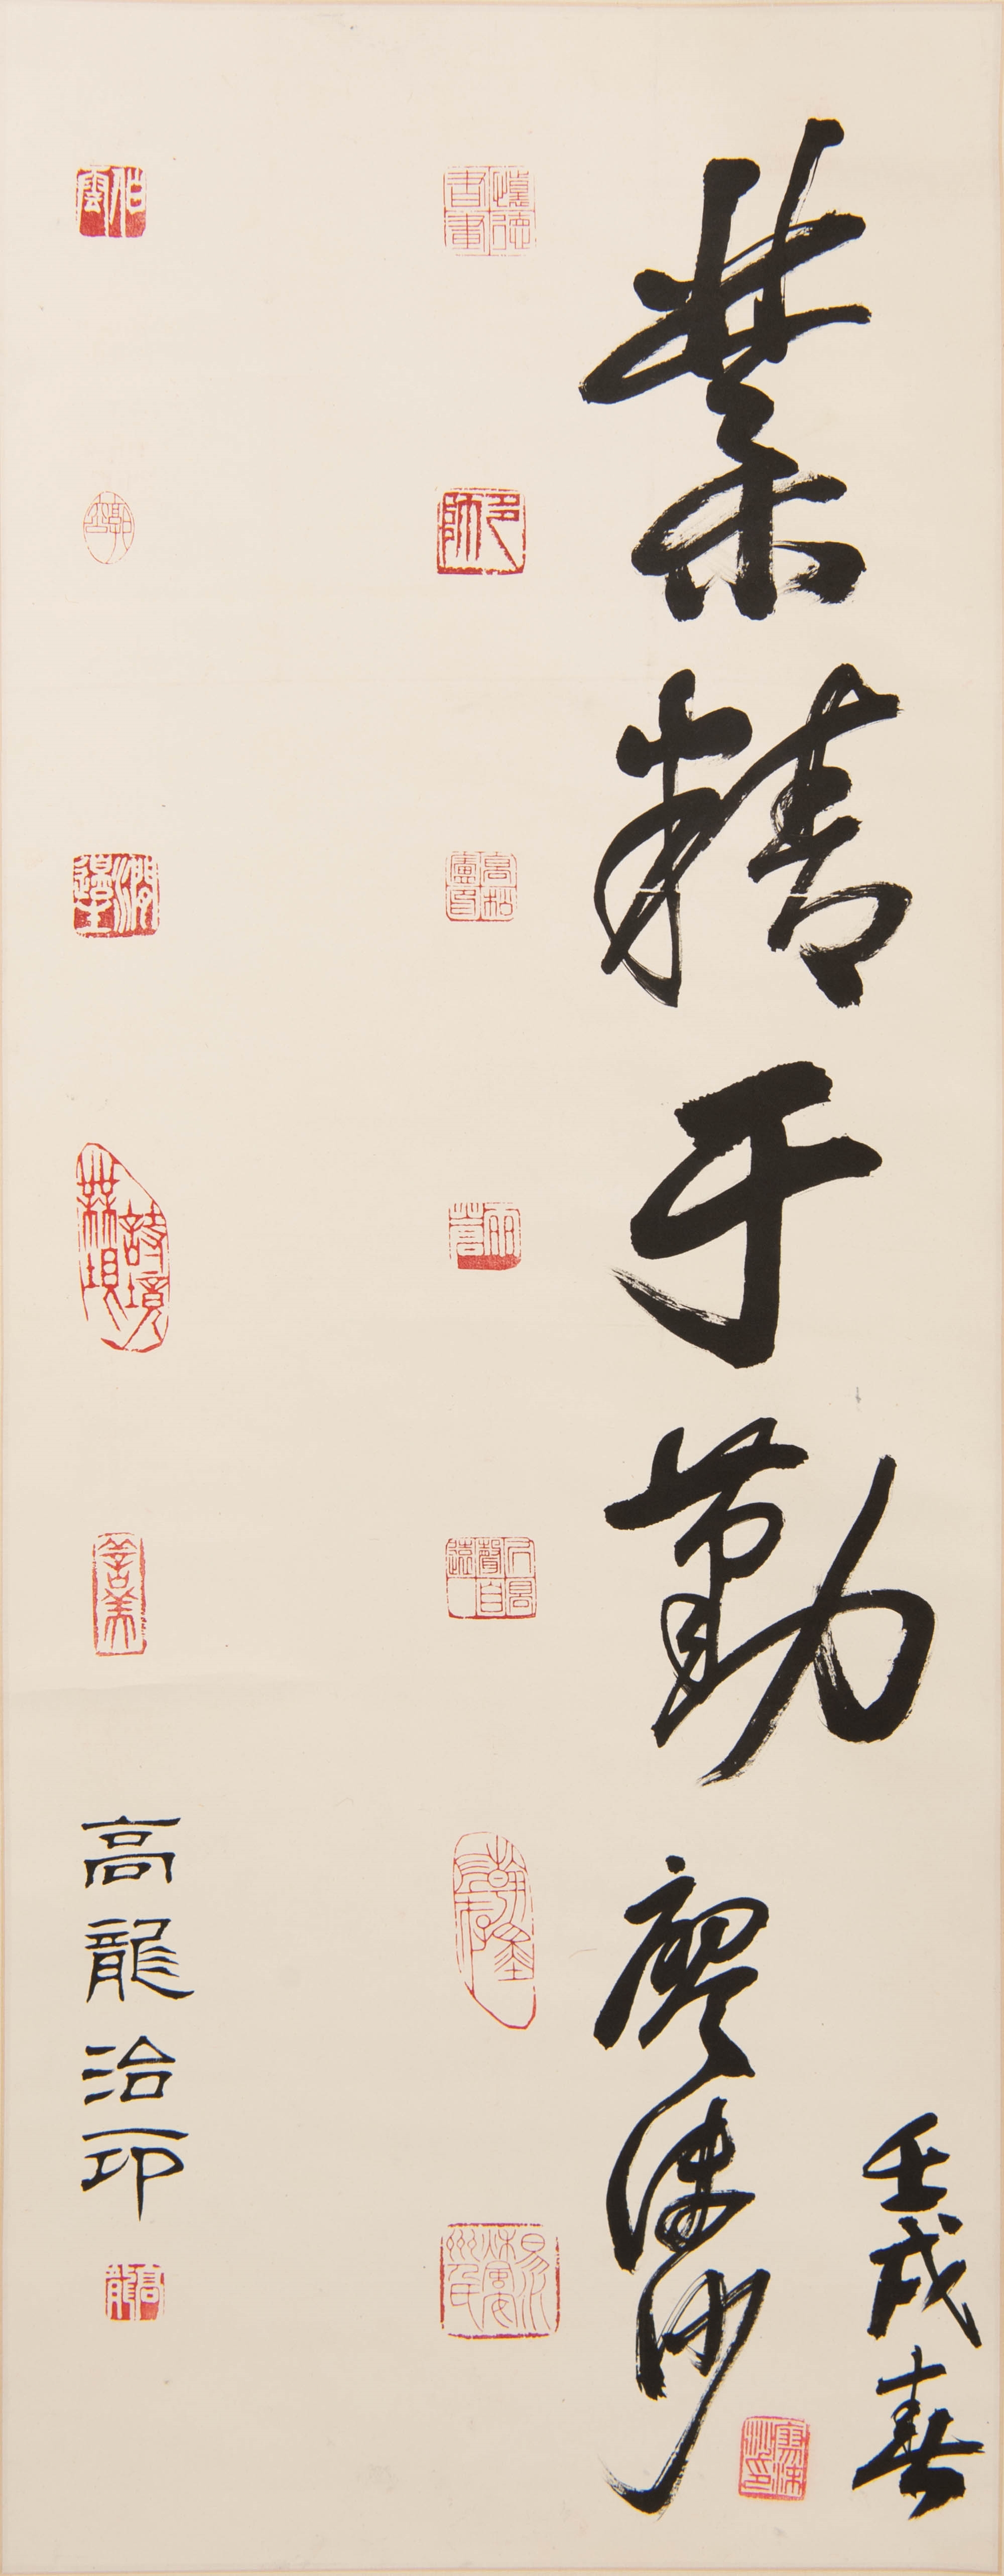 廖沫沙 高龍上款行書「業精於勤」鏡片 A Chinese calligraphy - Liao Mosha